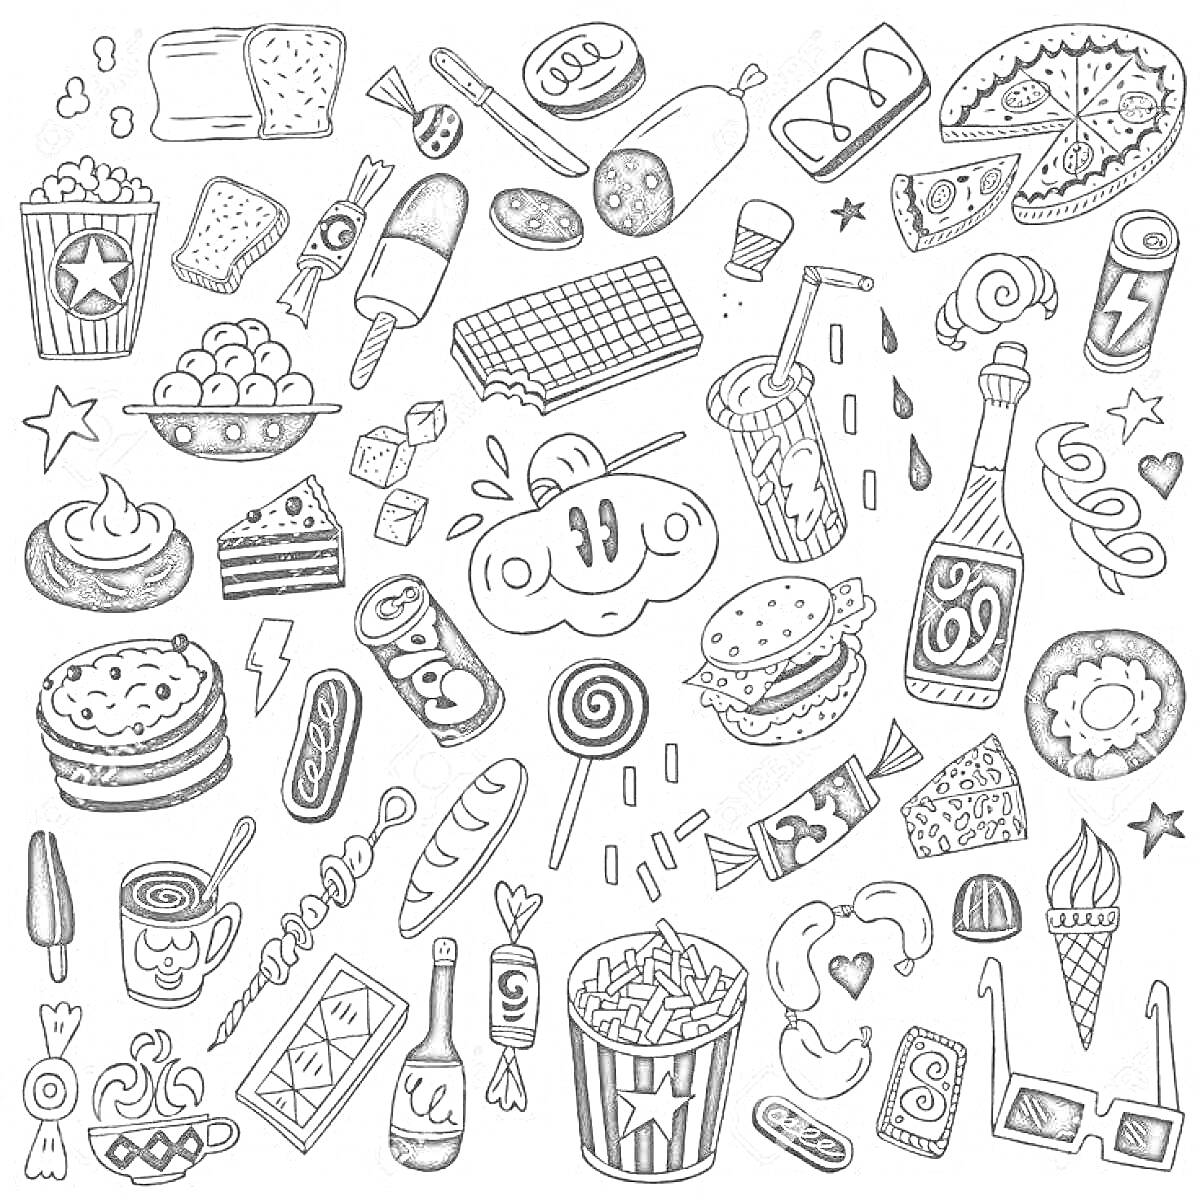 Раскраска Стикеры с едой: пирожные, гамбургеры, мороженое, пицца, хот-доги, пирожки, попкорн, напитки, шоколадка, чипсы, лапша, круассаны, торты, конфеты